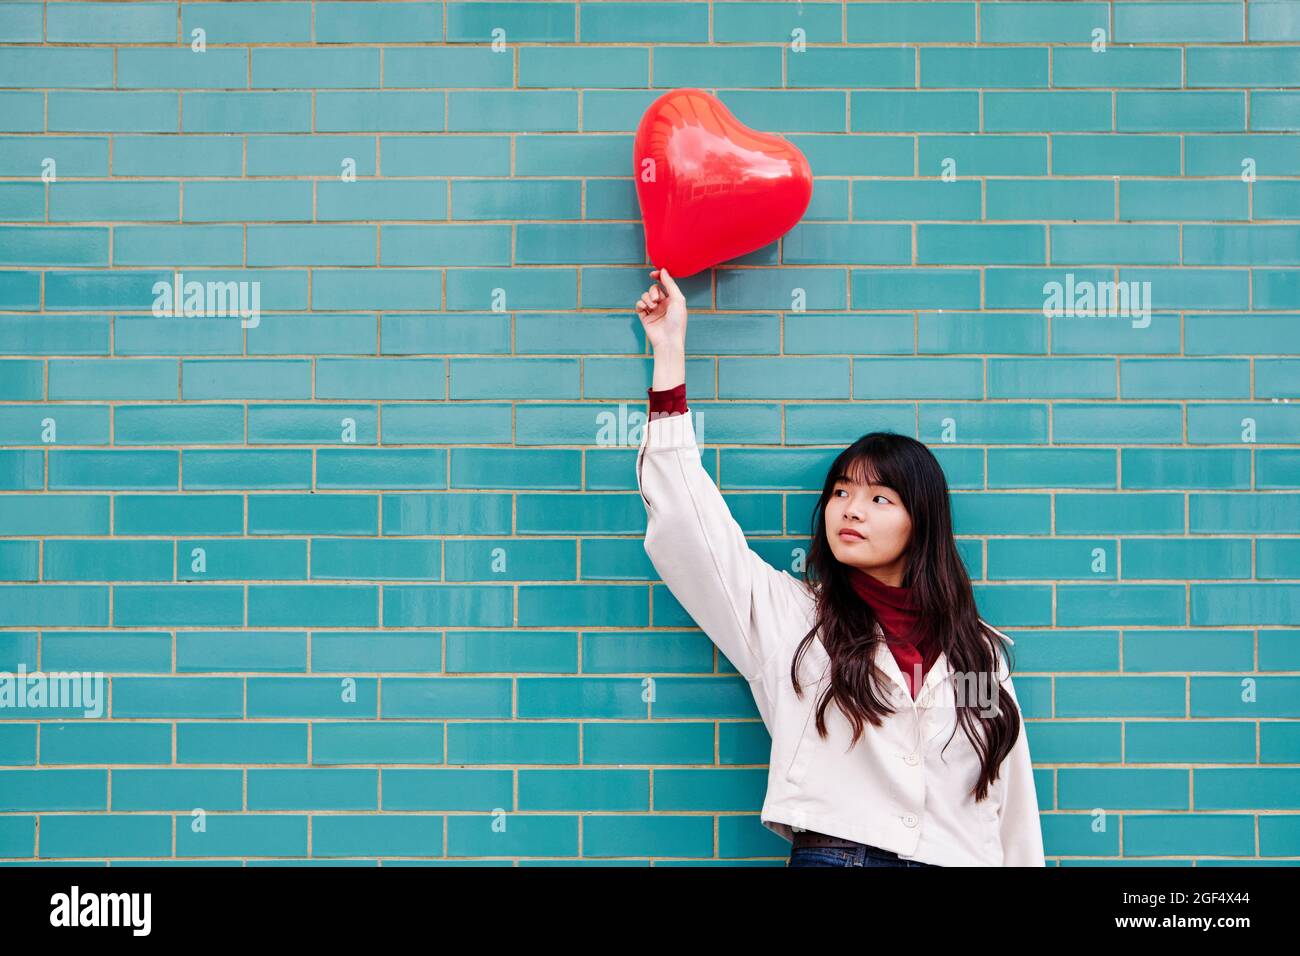 Junge Frau schaut weg, während sie den roten Herzballon vor der Ziegelwand hält Stockfoto